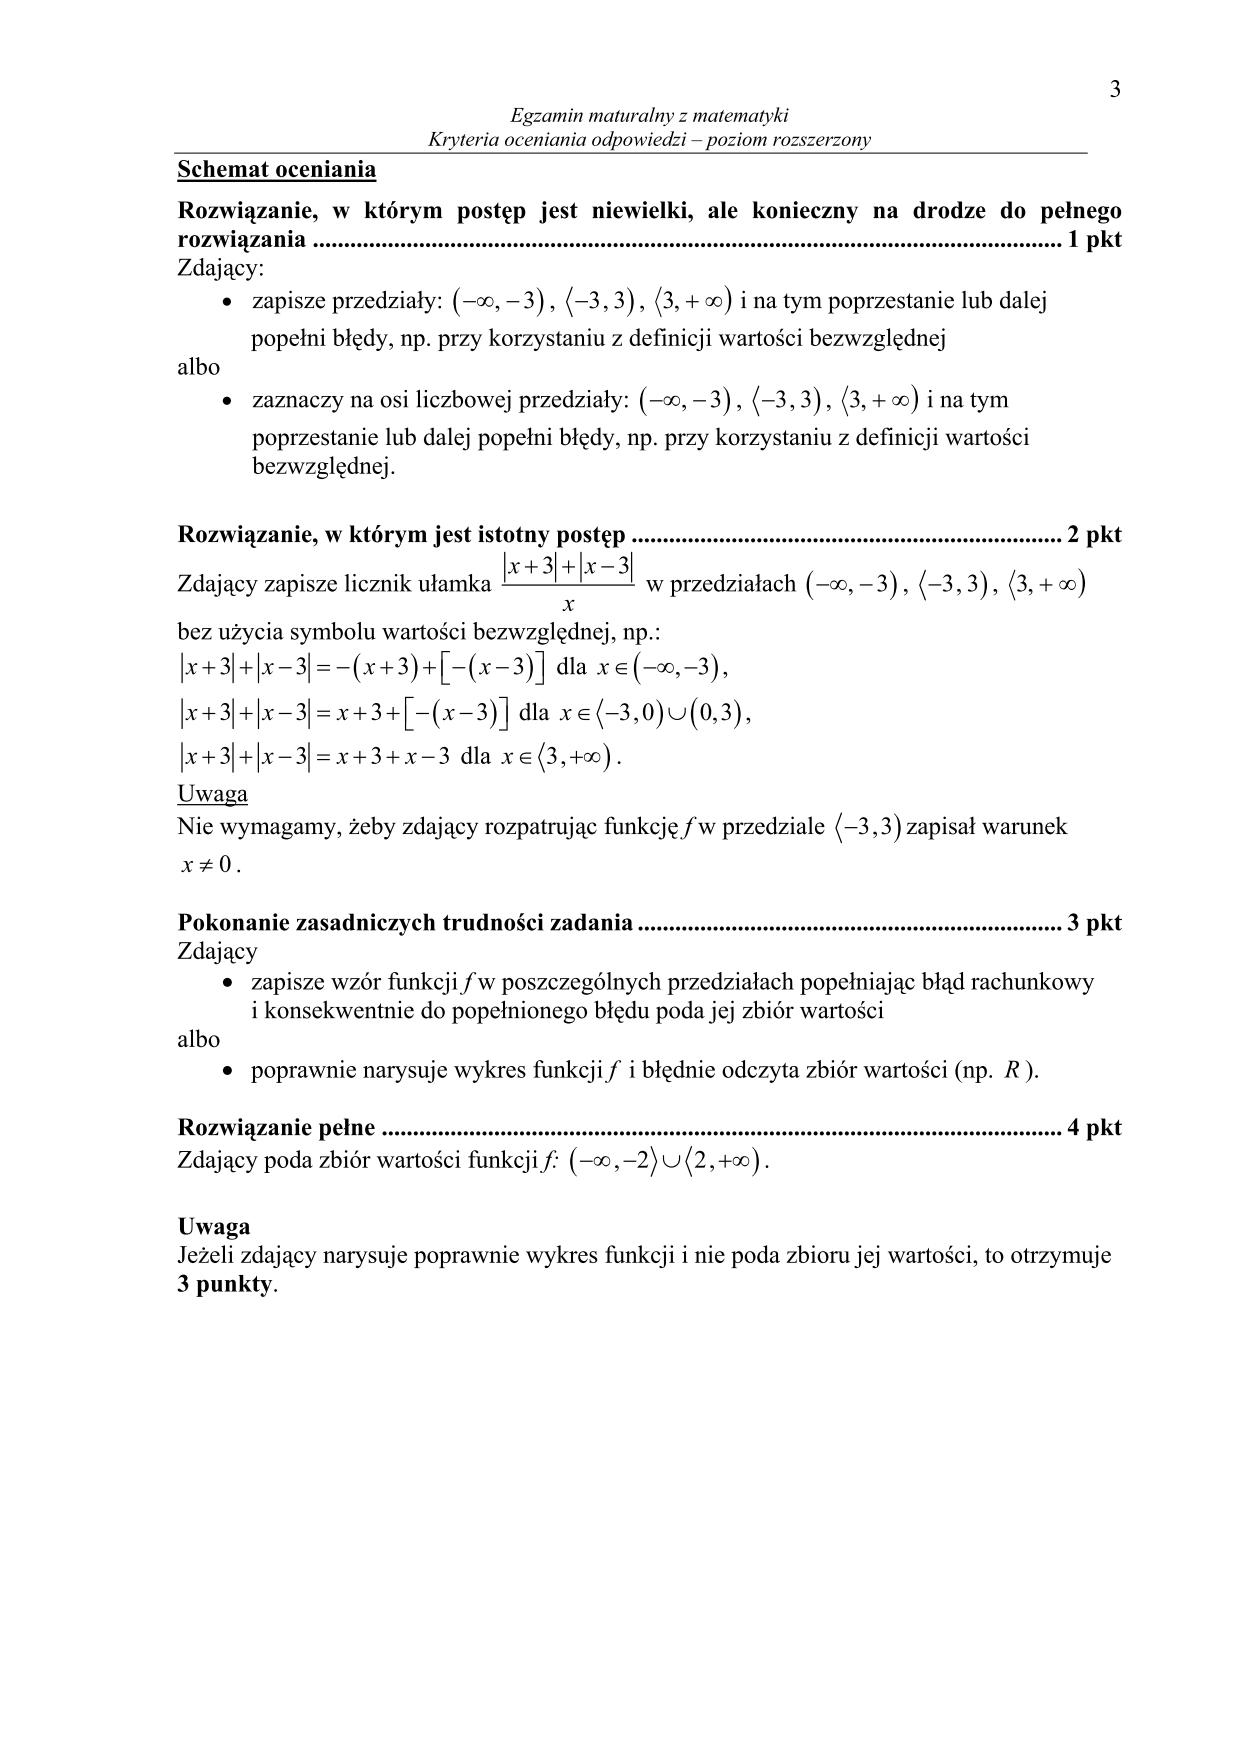 odpowiedzi-matematyka-poziom-rozszerzony-matura-2014-3